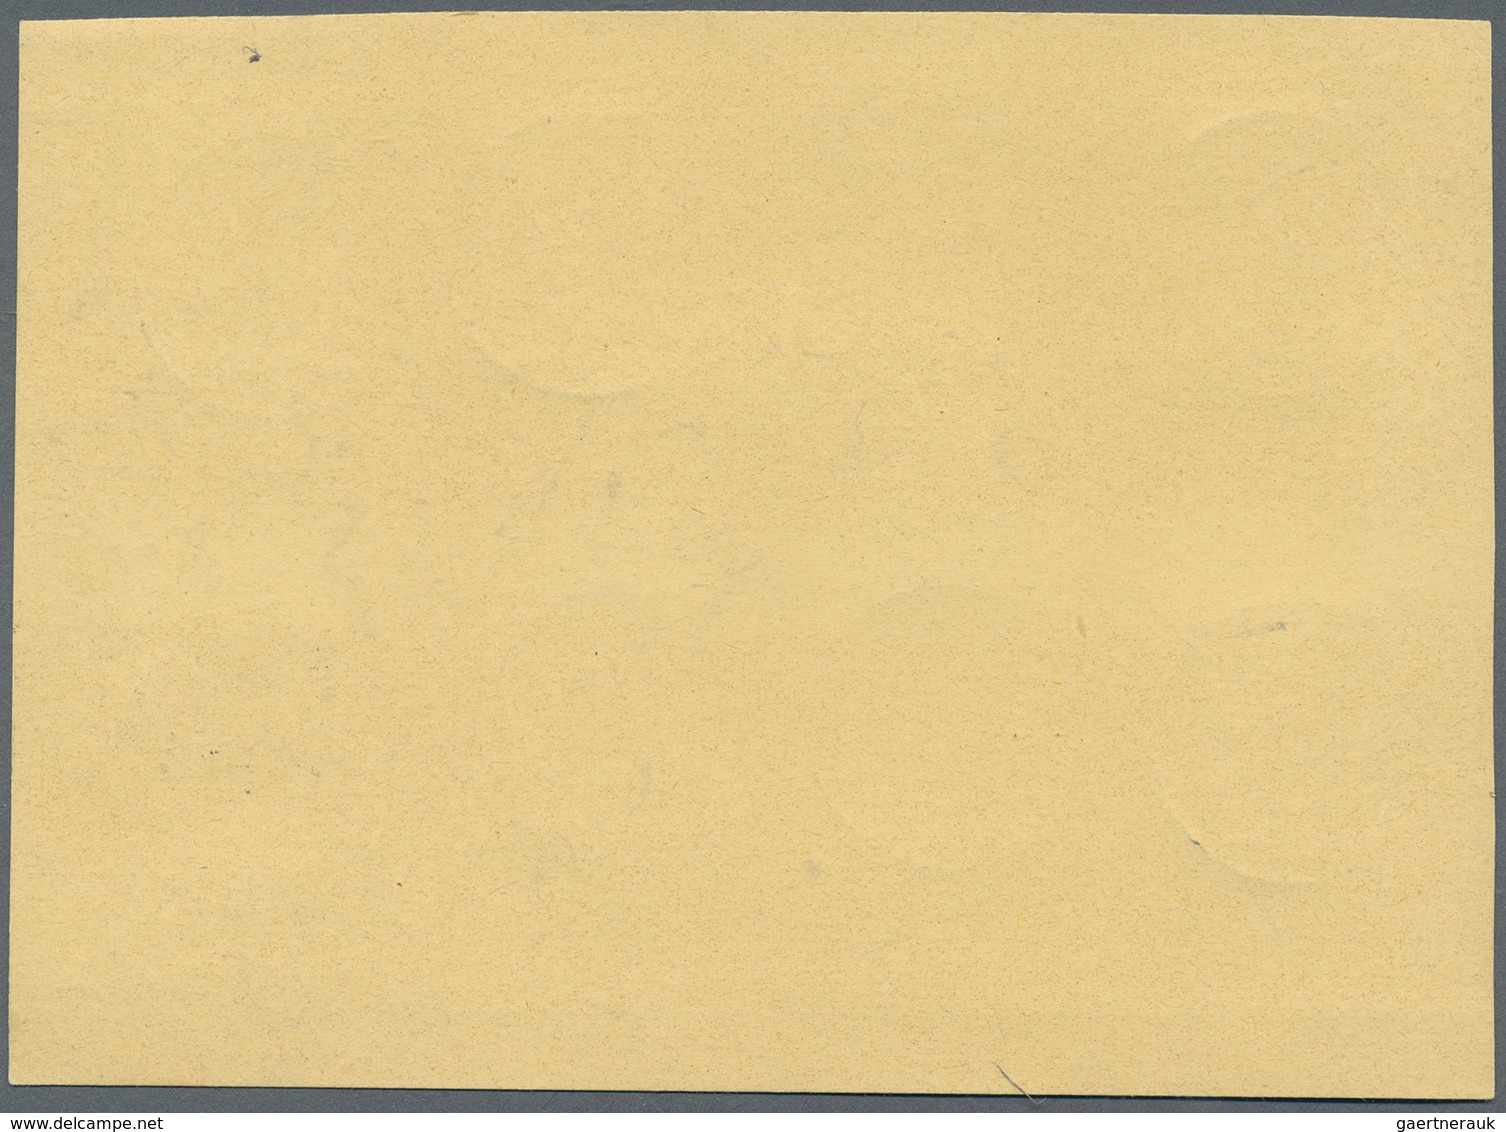 Bundesrepublik Deutschland: 1960, Heuss Lumogen, Kompletter Satz Auf Blanko-Karte, Jeder Wert Einzel - Briefe U. Dokumente